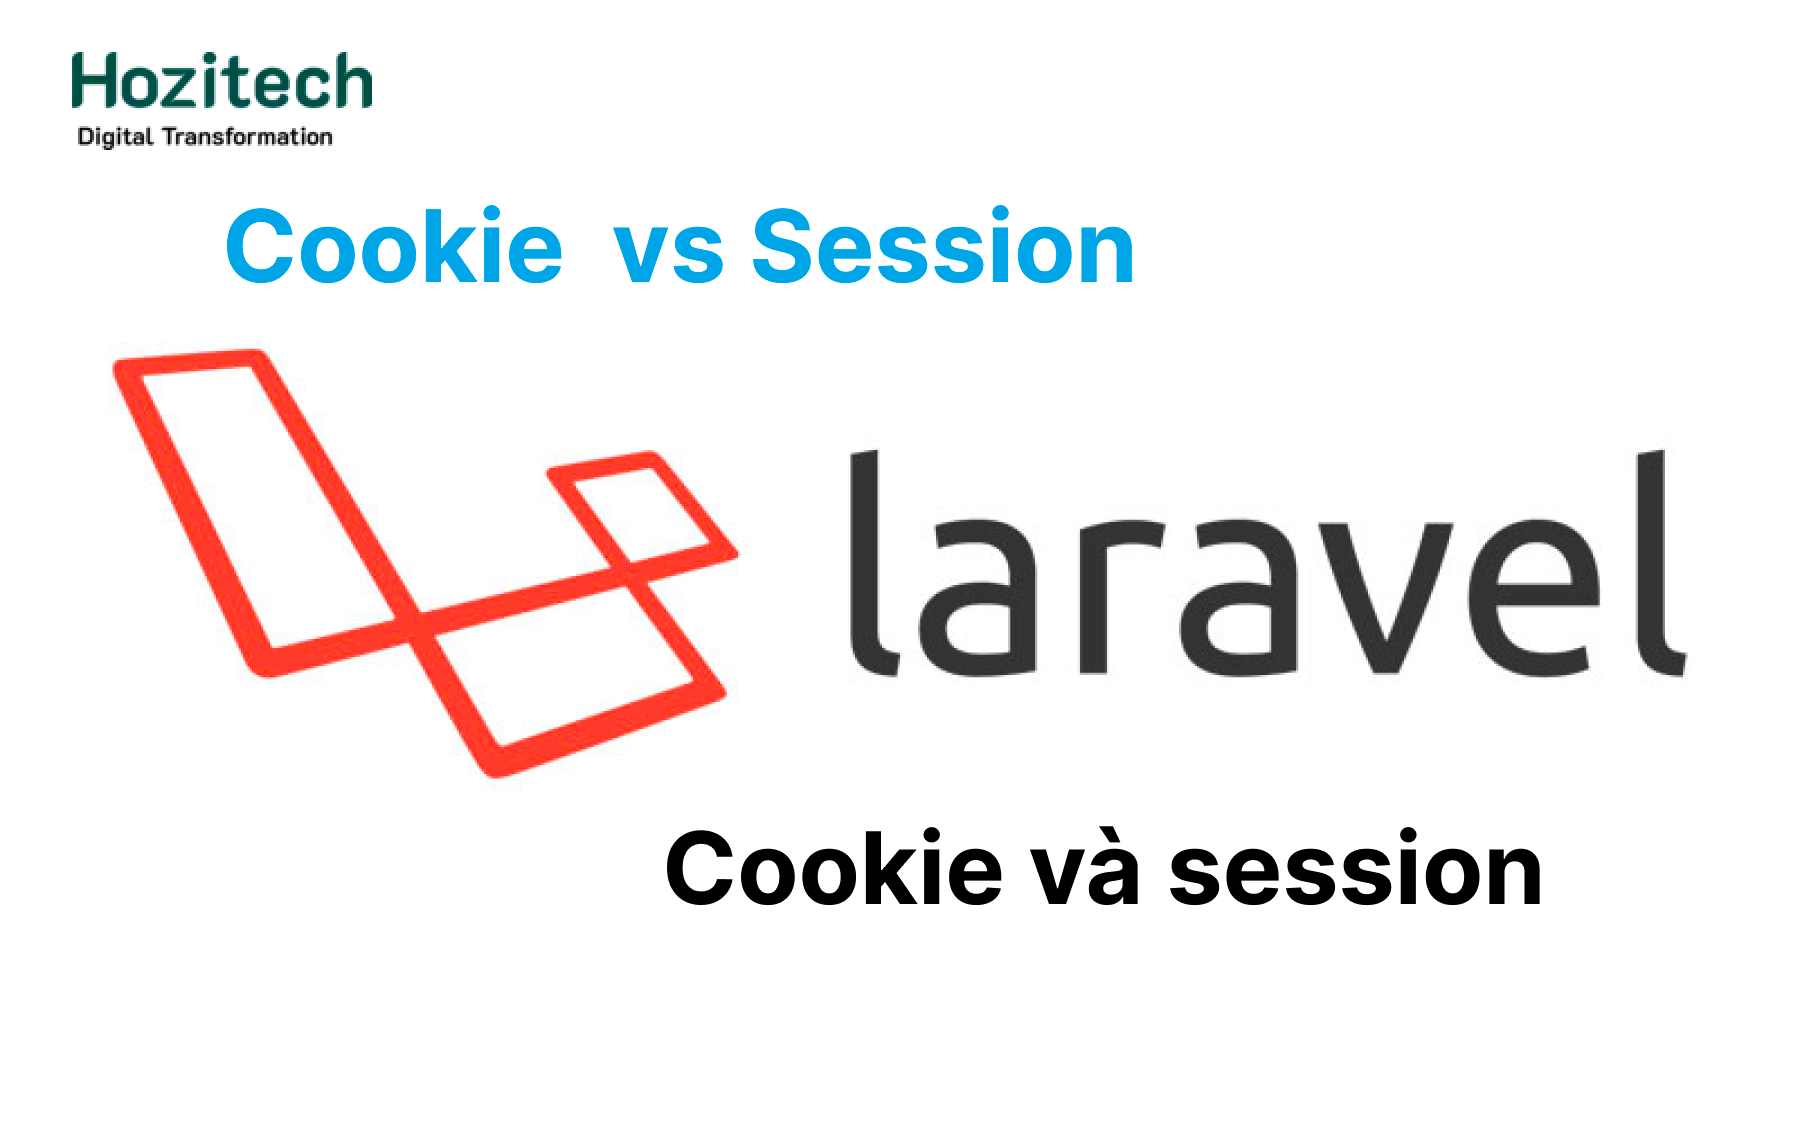 Session là gì? Cookie là gì? Sự khác biệt giữa session và cookie